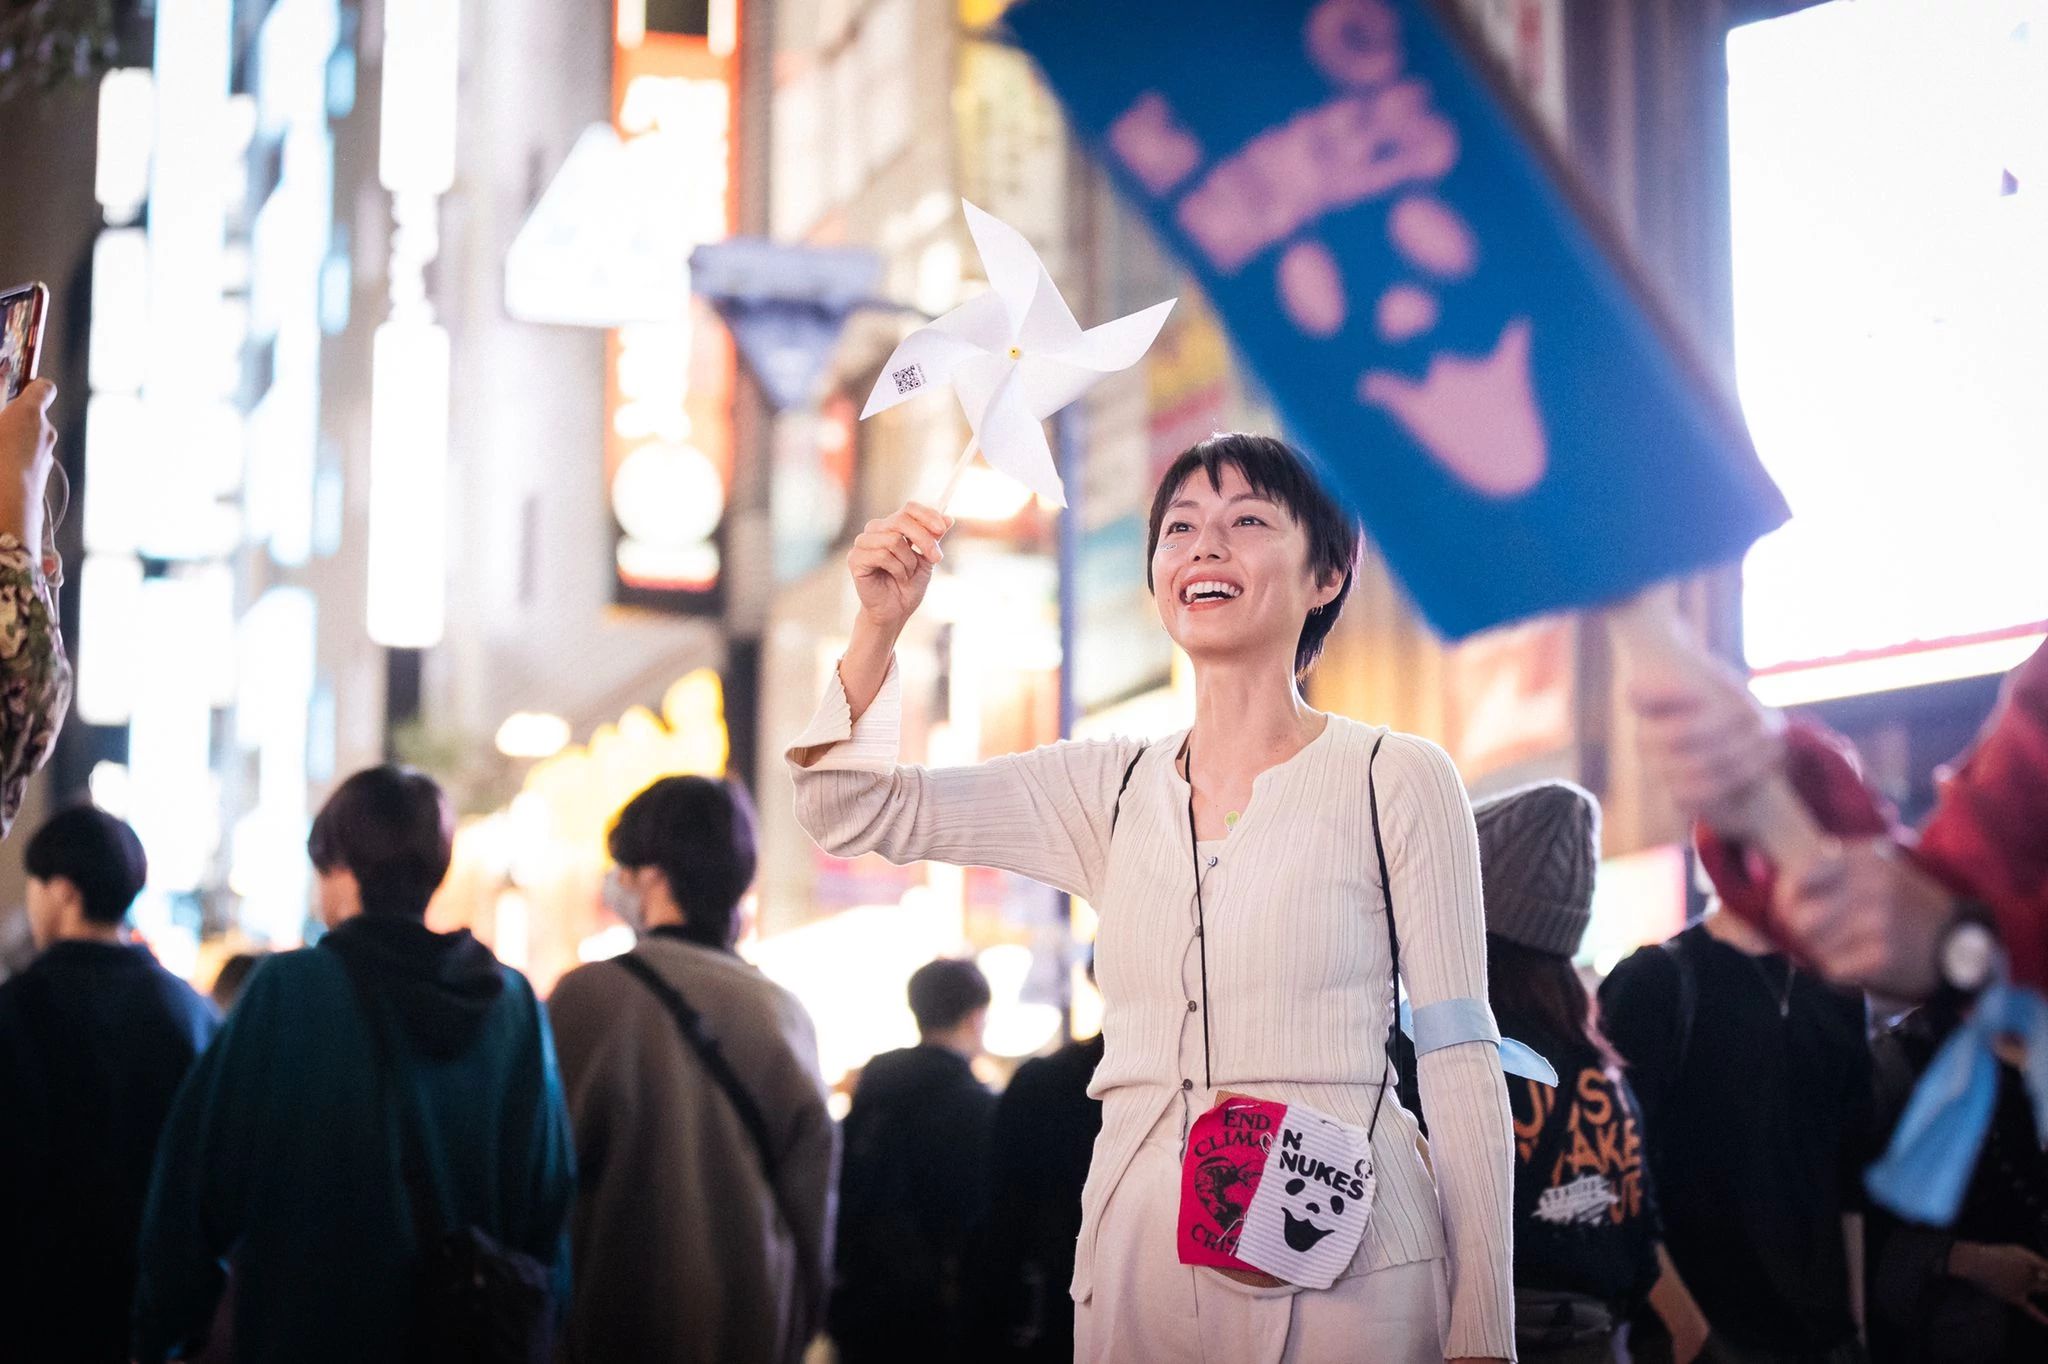 東京 11月3日：熱意ある800人以上が新宿駅に集結。声を合わせて力強い気候保護の歌を歌い、都心に響きわたった。350 JapanとWe Want Our Futureの連携により企画。写真提供：Jun Yokoyama